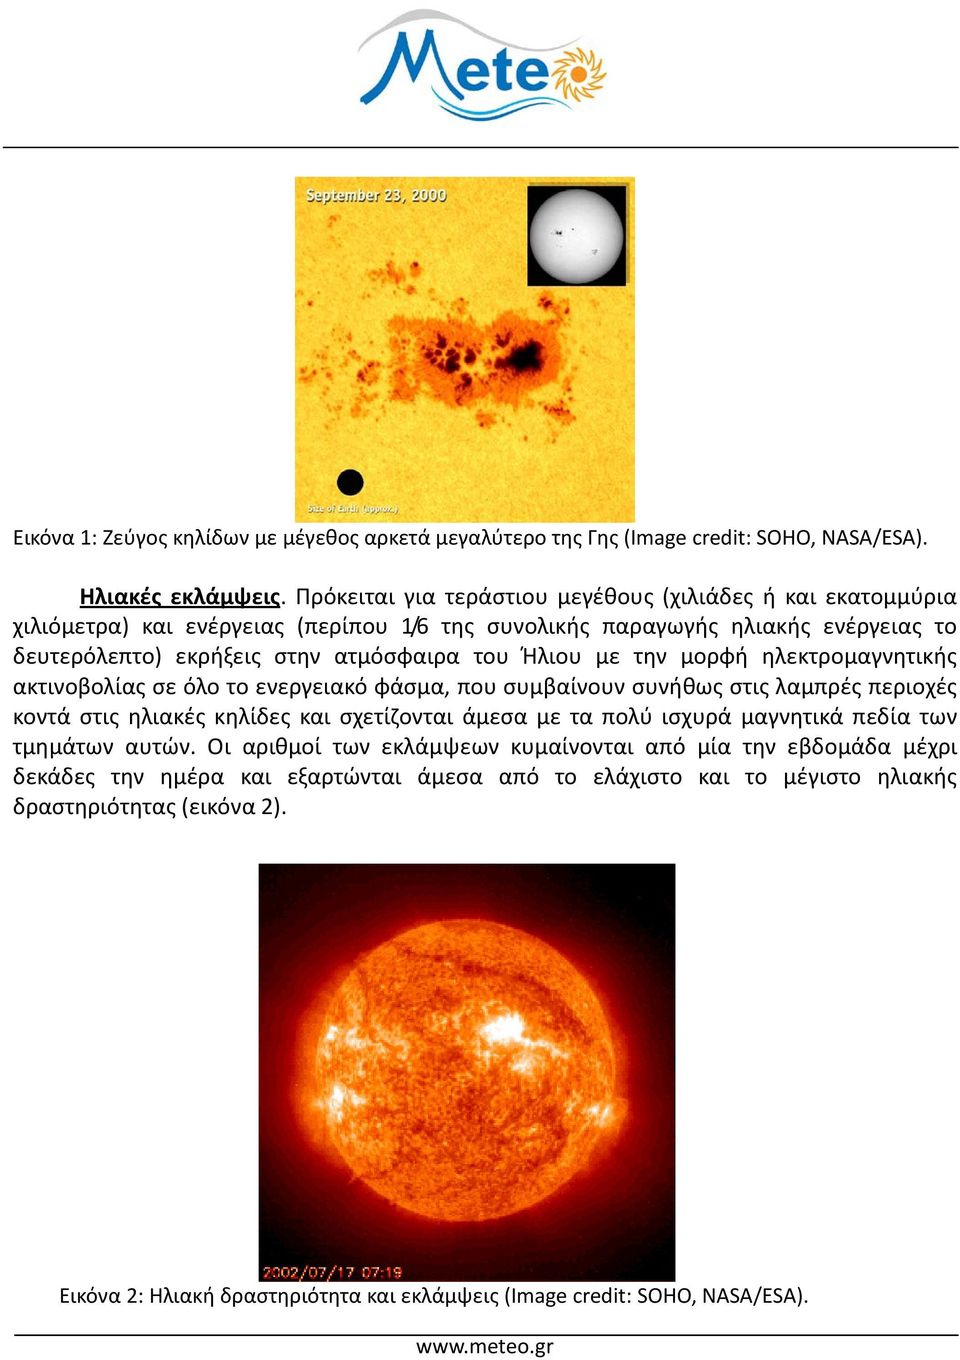 Ήλιου με την μορφή ηλεκτρομαγνητικής ακτινοβολίας σε όλο το ενεργειακό φάσμα, που συμβαίνουν συνήθως στις λαμπρές περιοχές κοντά στις ηλιακές κηλίδες και σχετίζονται άμεσα με τα πολύ ισχυρά